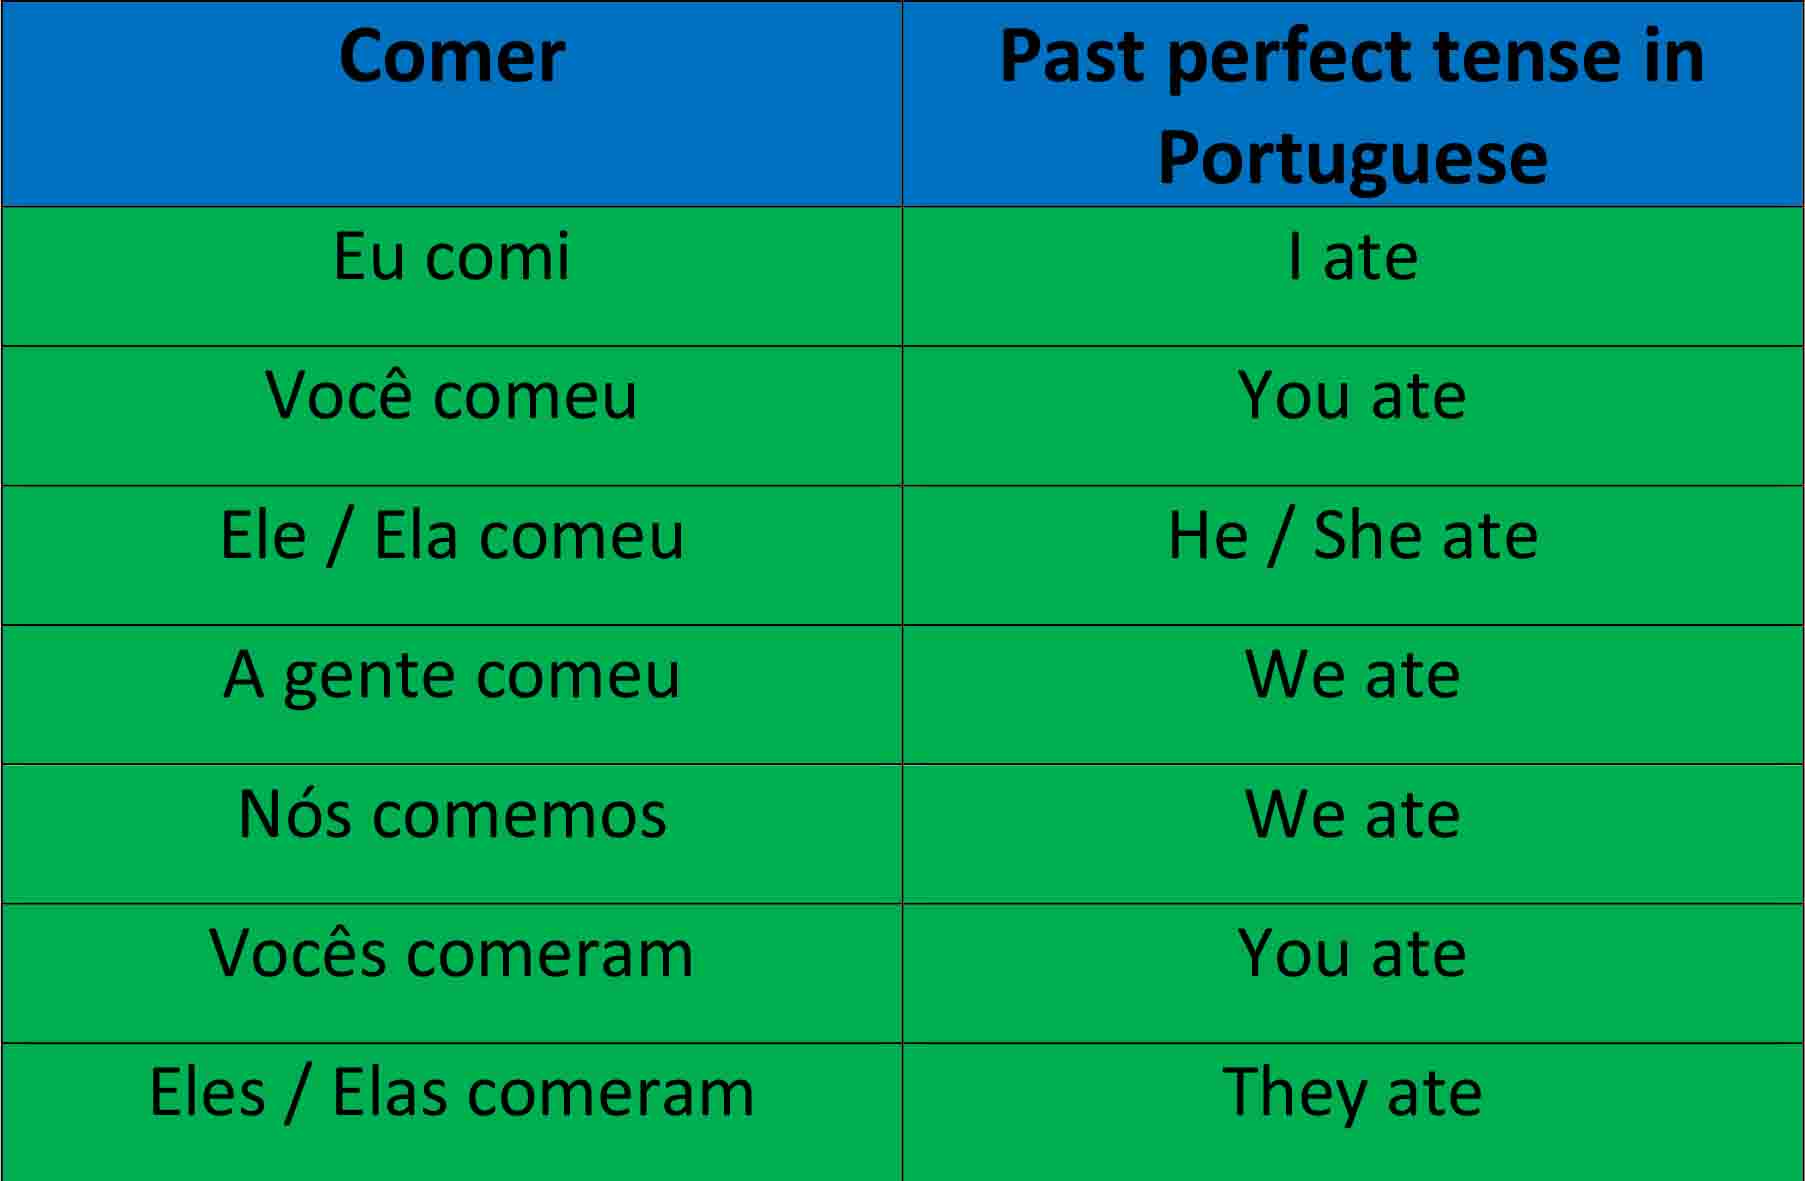 Comer - Portuguese past perfec tense comer